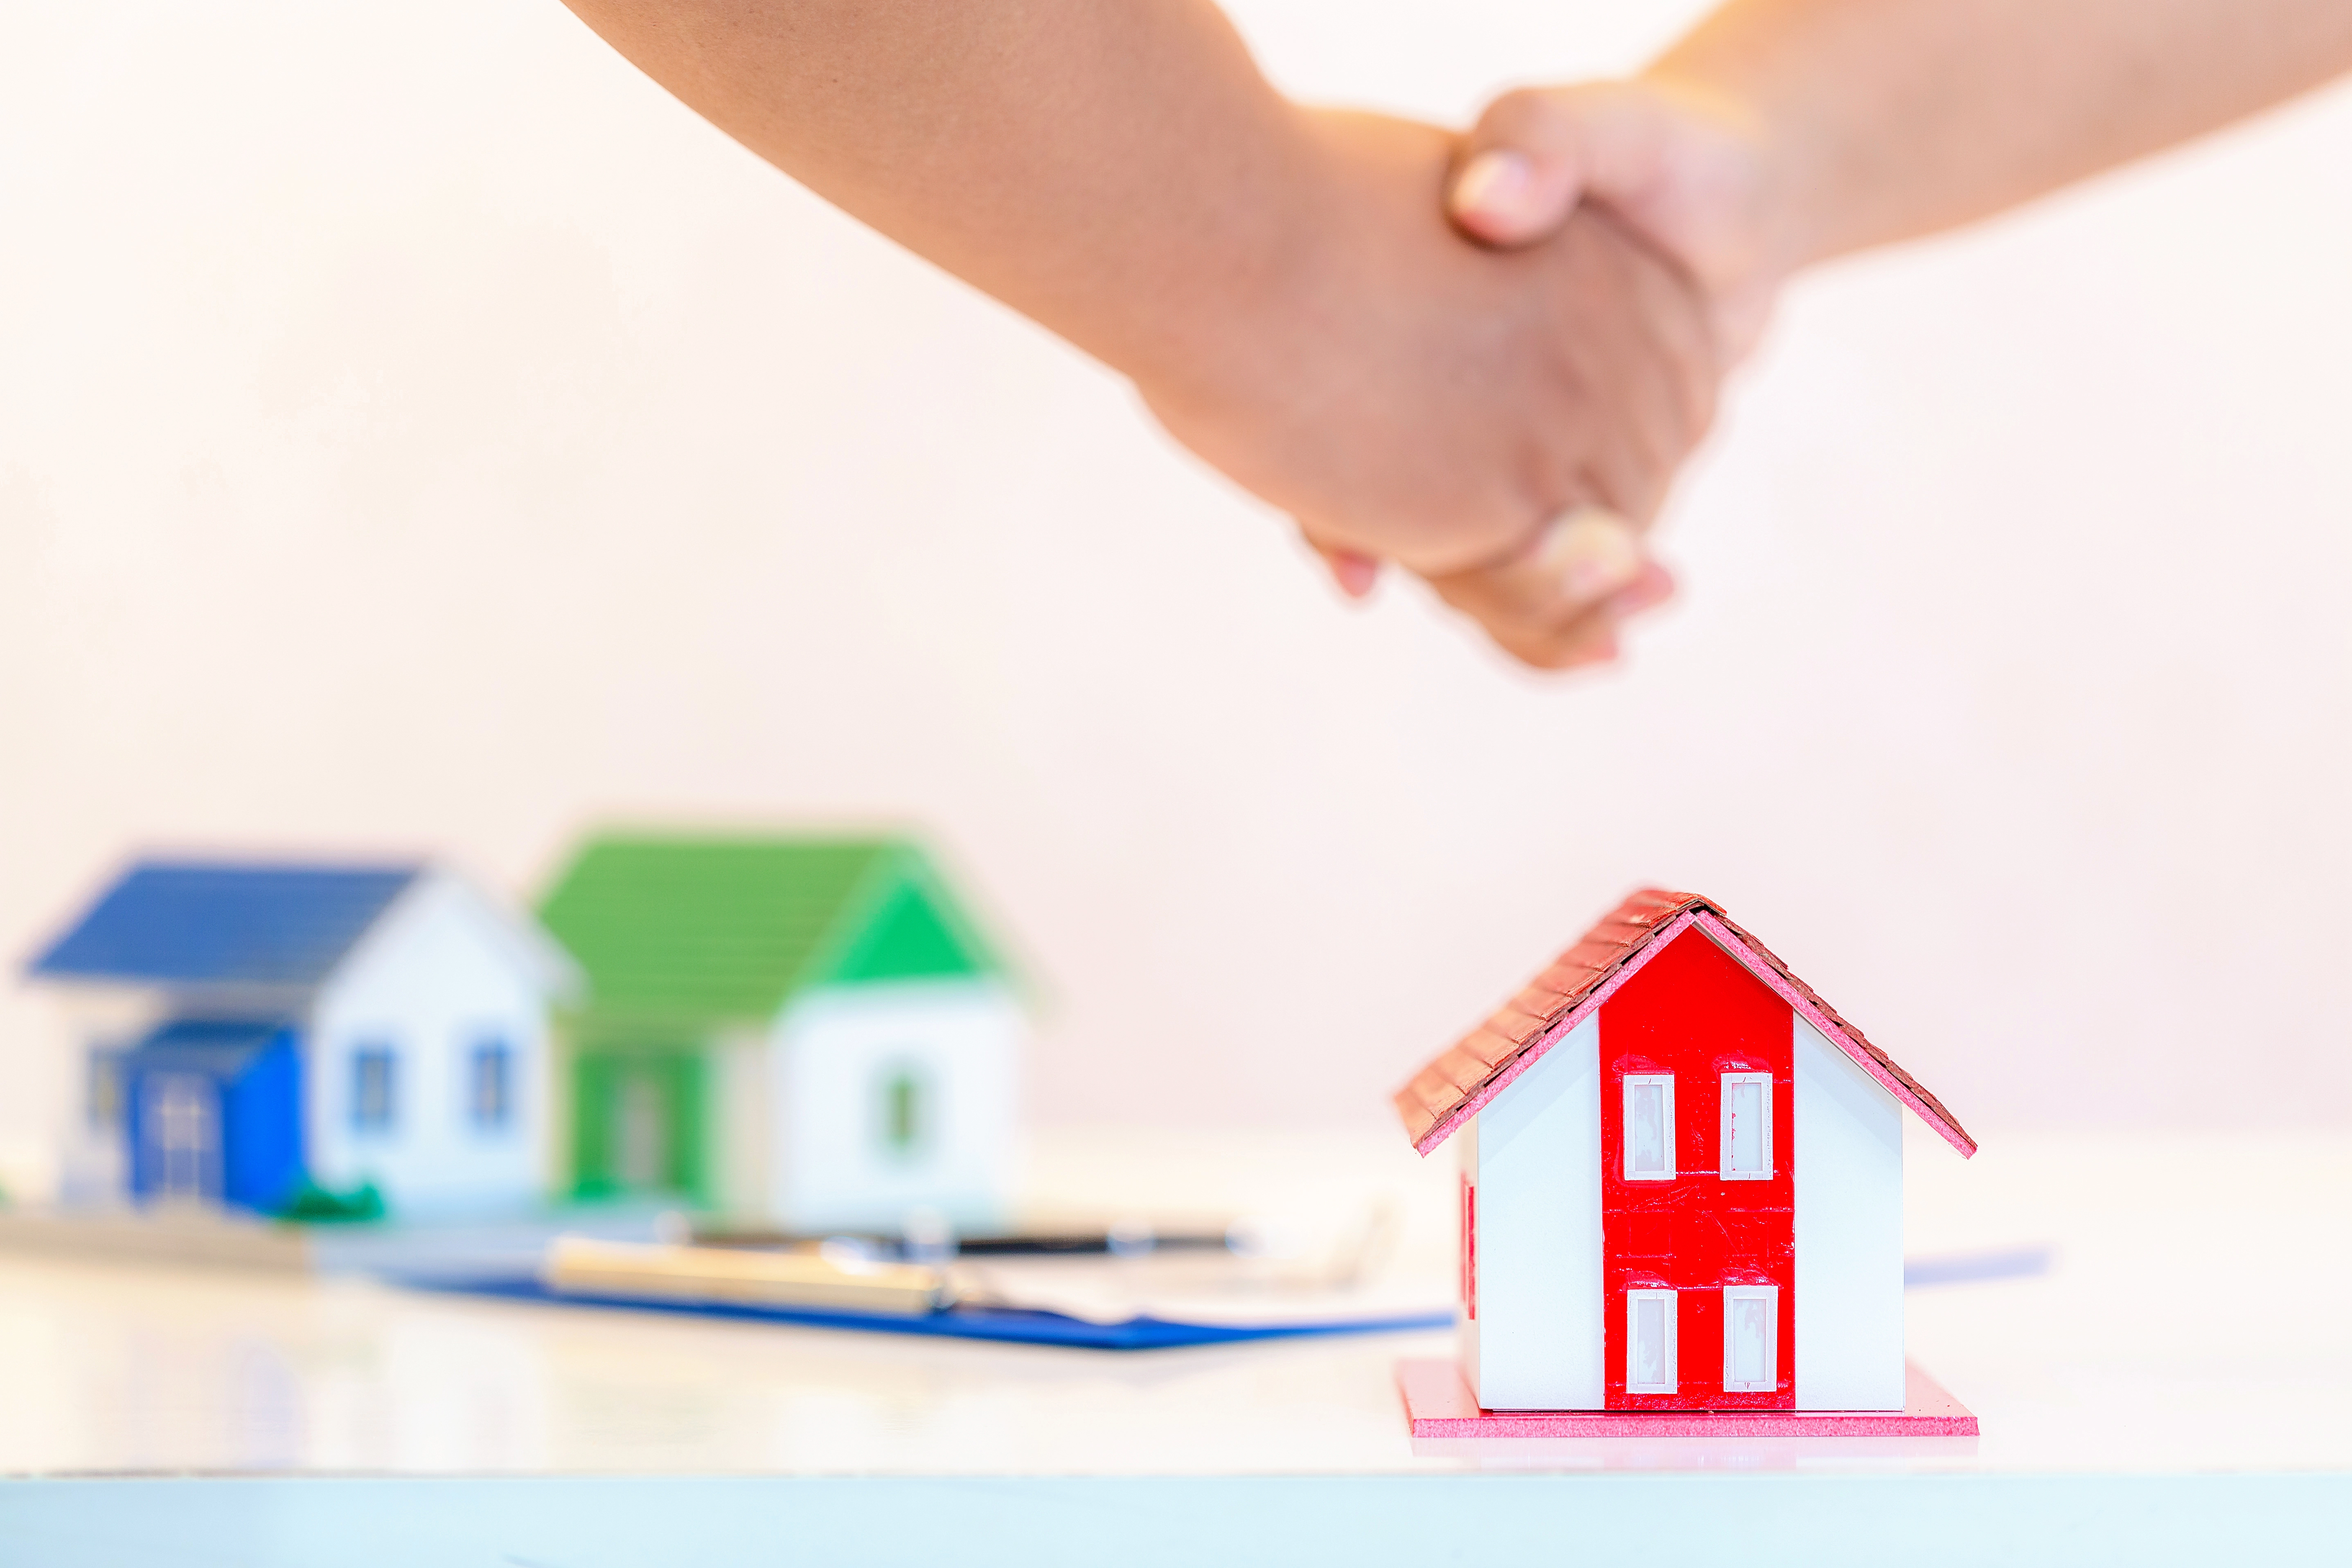 Comprenez comment votre cotisation d'assurance habitation à Vitrolles est calculée et évitez les augmentations surprises grâce à nos conseils pratiques.